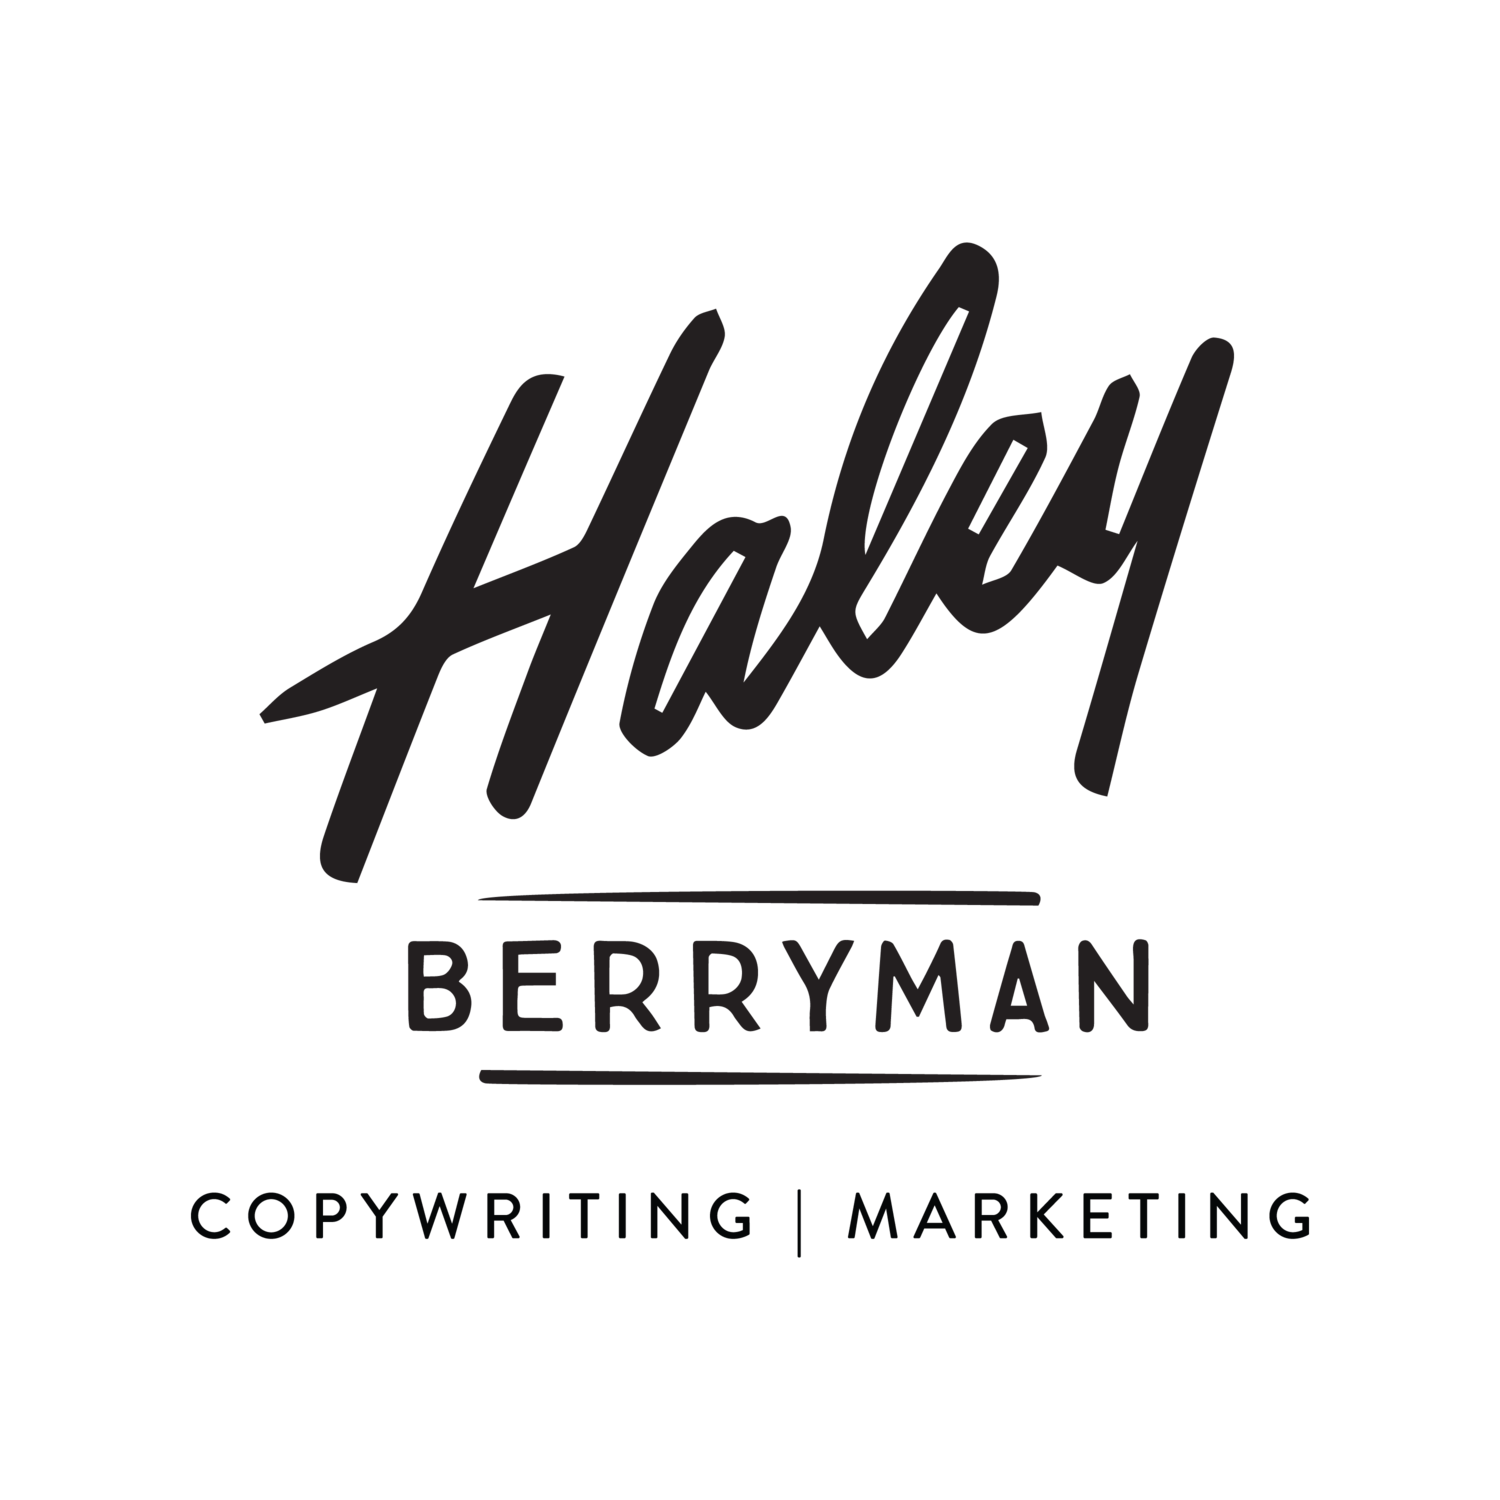 Haley Logo - Haley Berryman